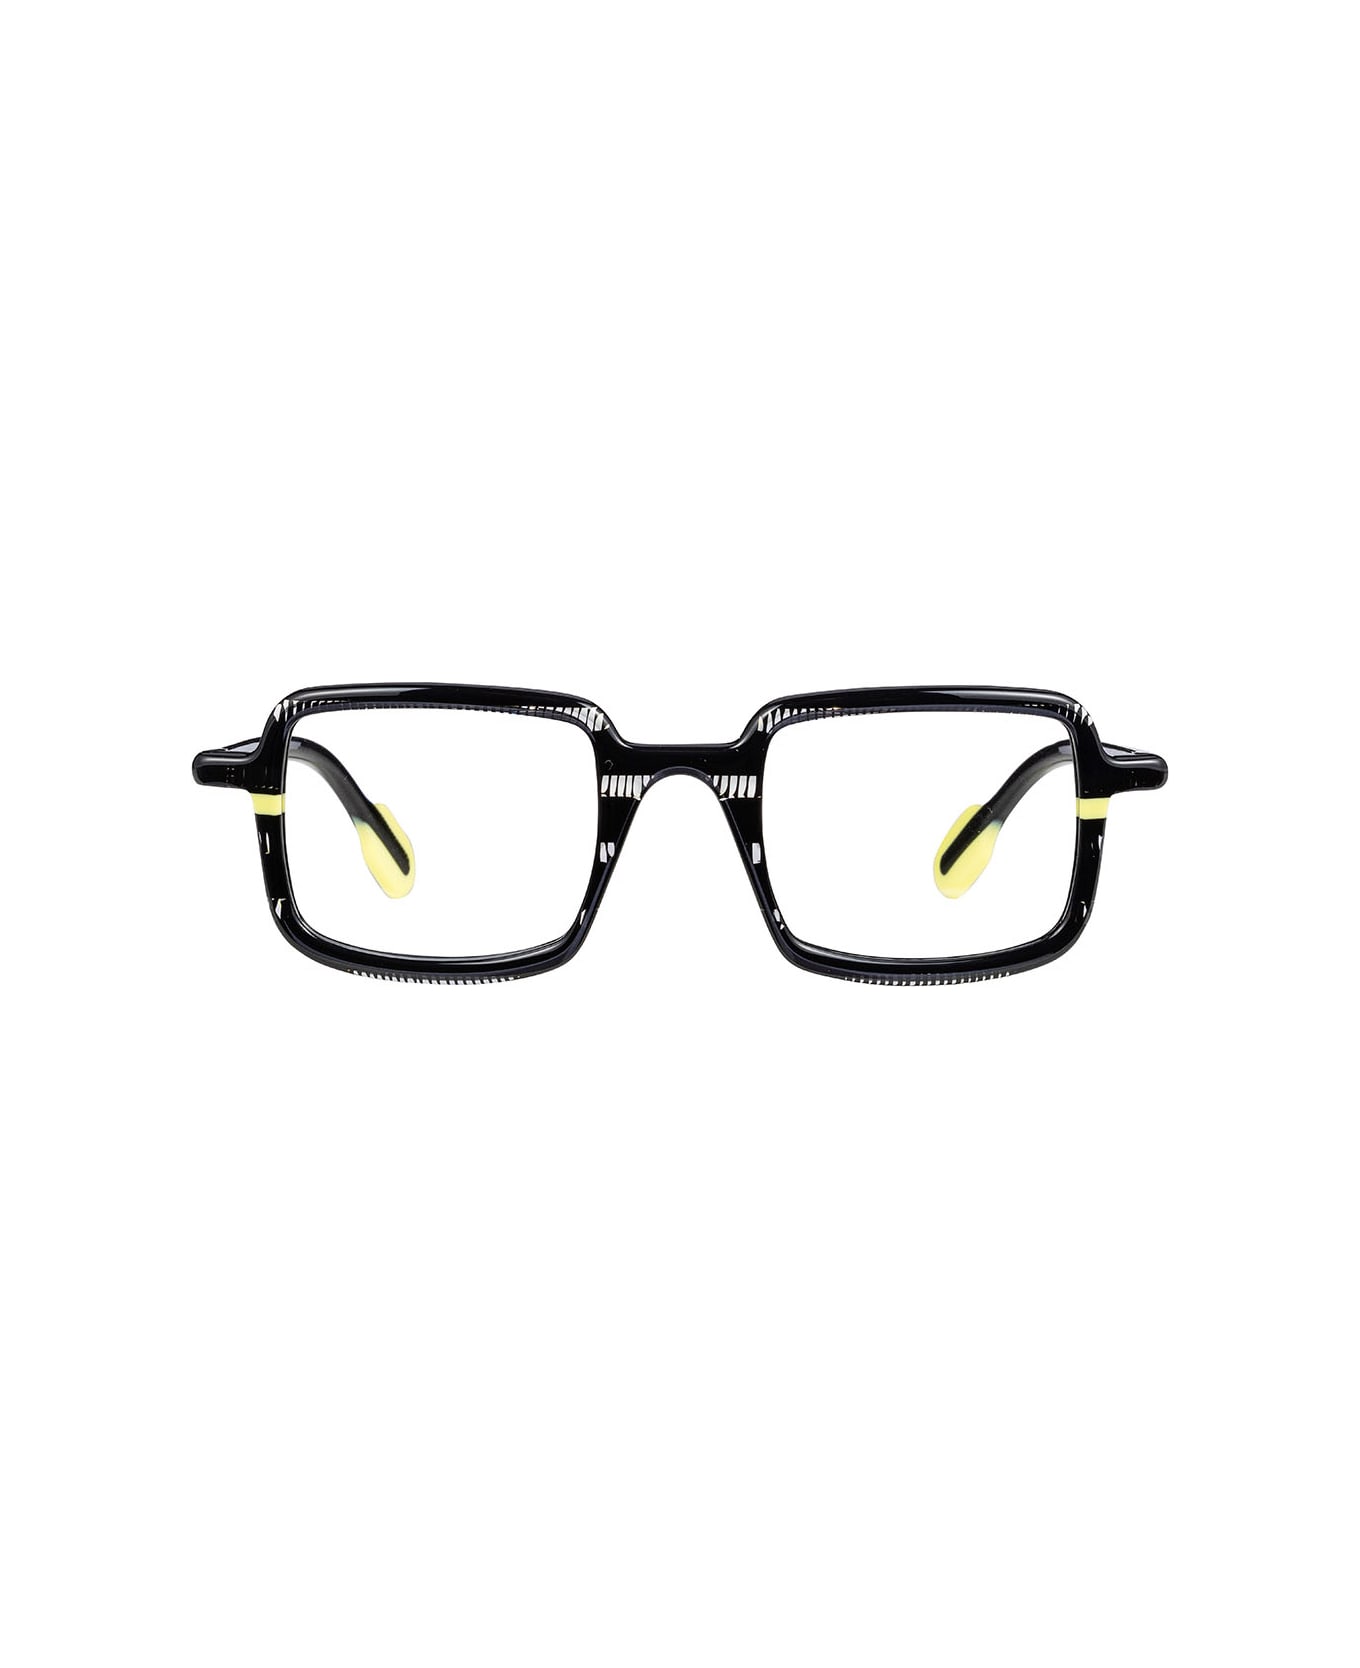 Matttew 11g44bn0a Glasses - Nero